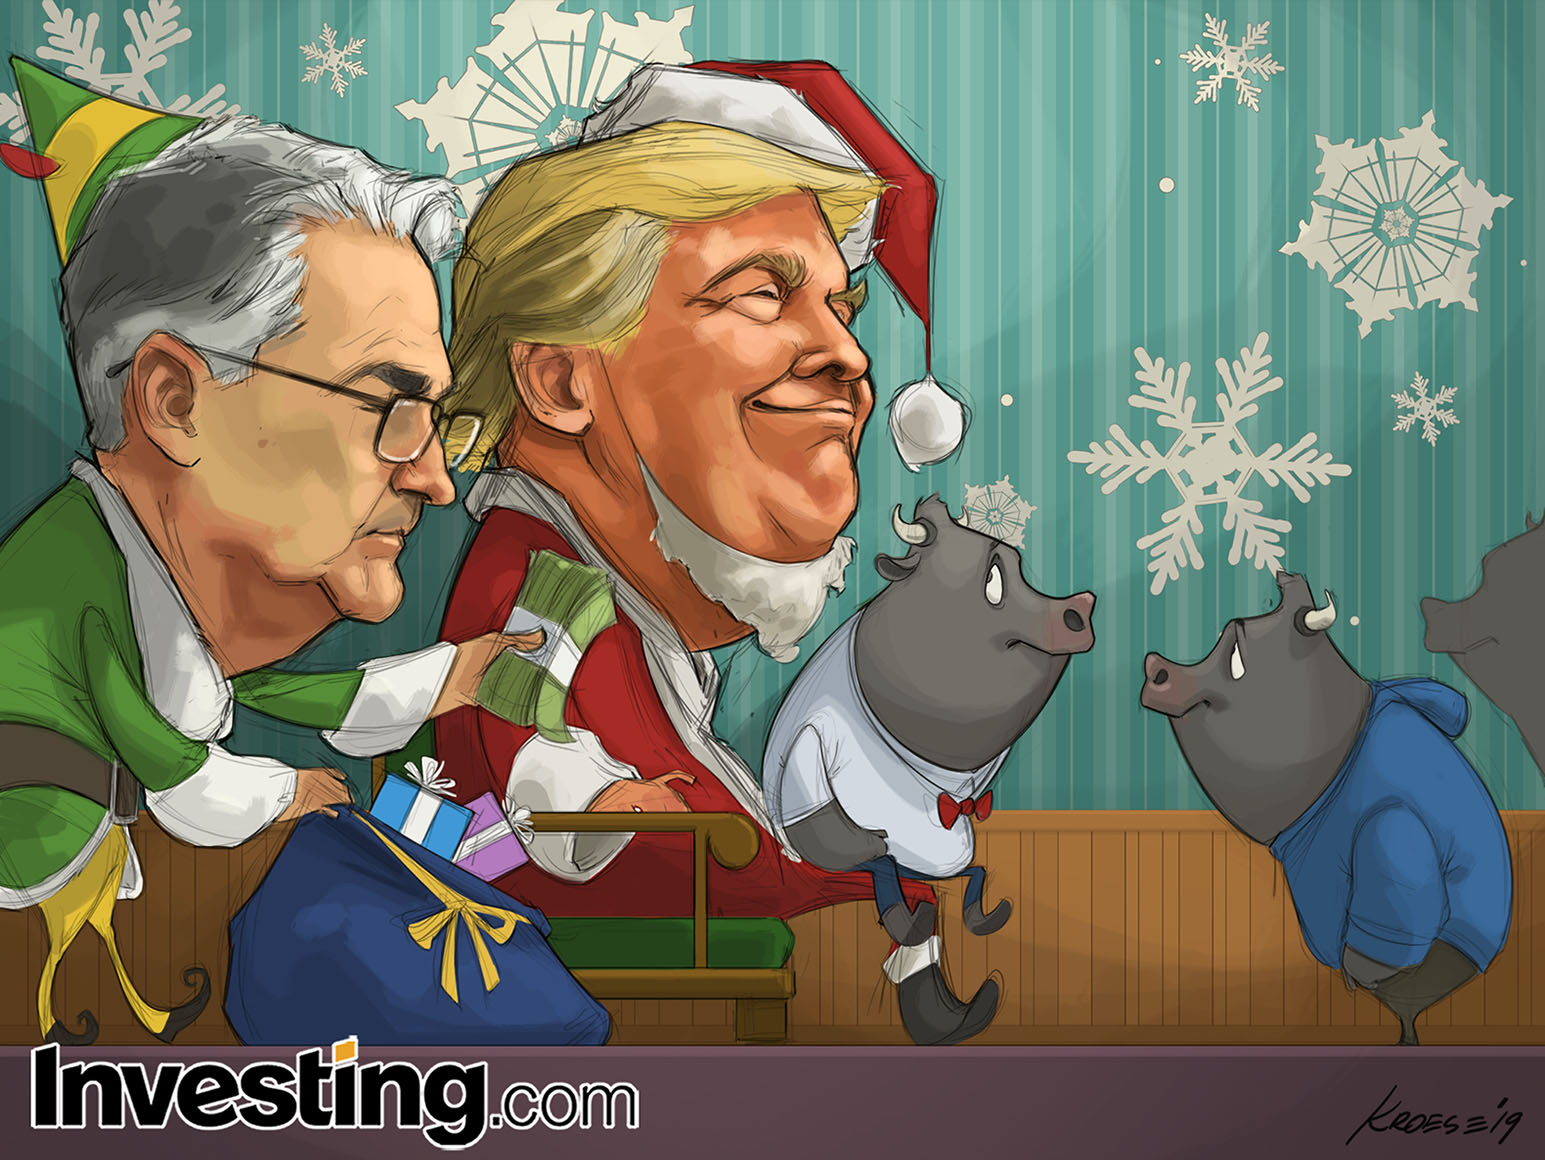 ¡Feliz Navidad y felices fiestas desde Investing.com!